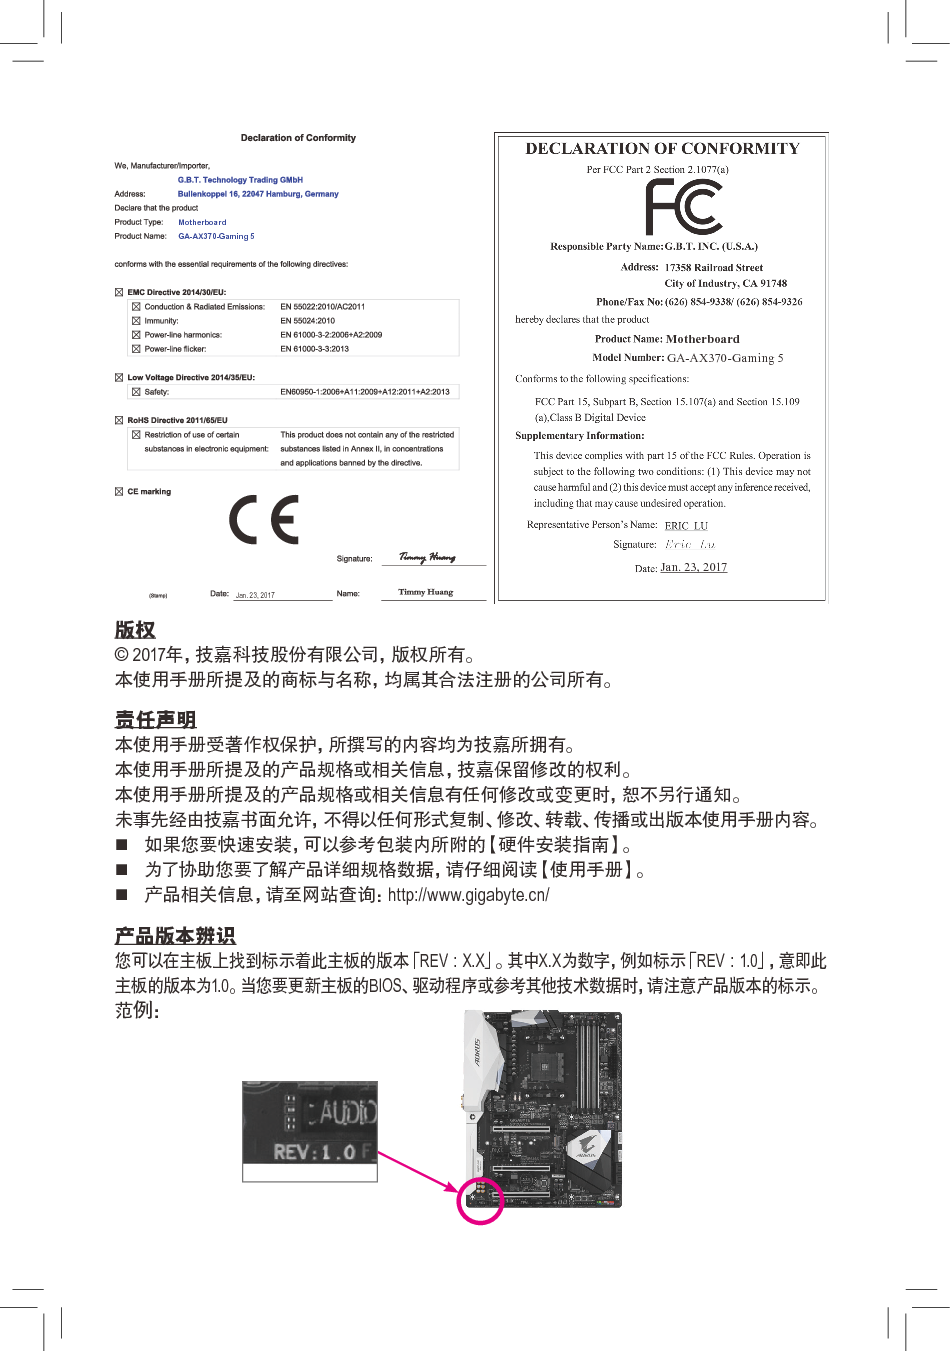 技嘉 Gigabyte GA-AX370-Gaming 5 使用手册 第1页